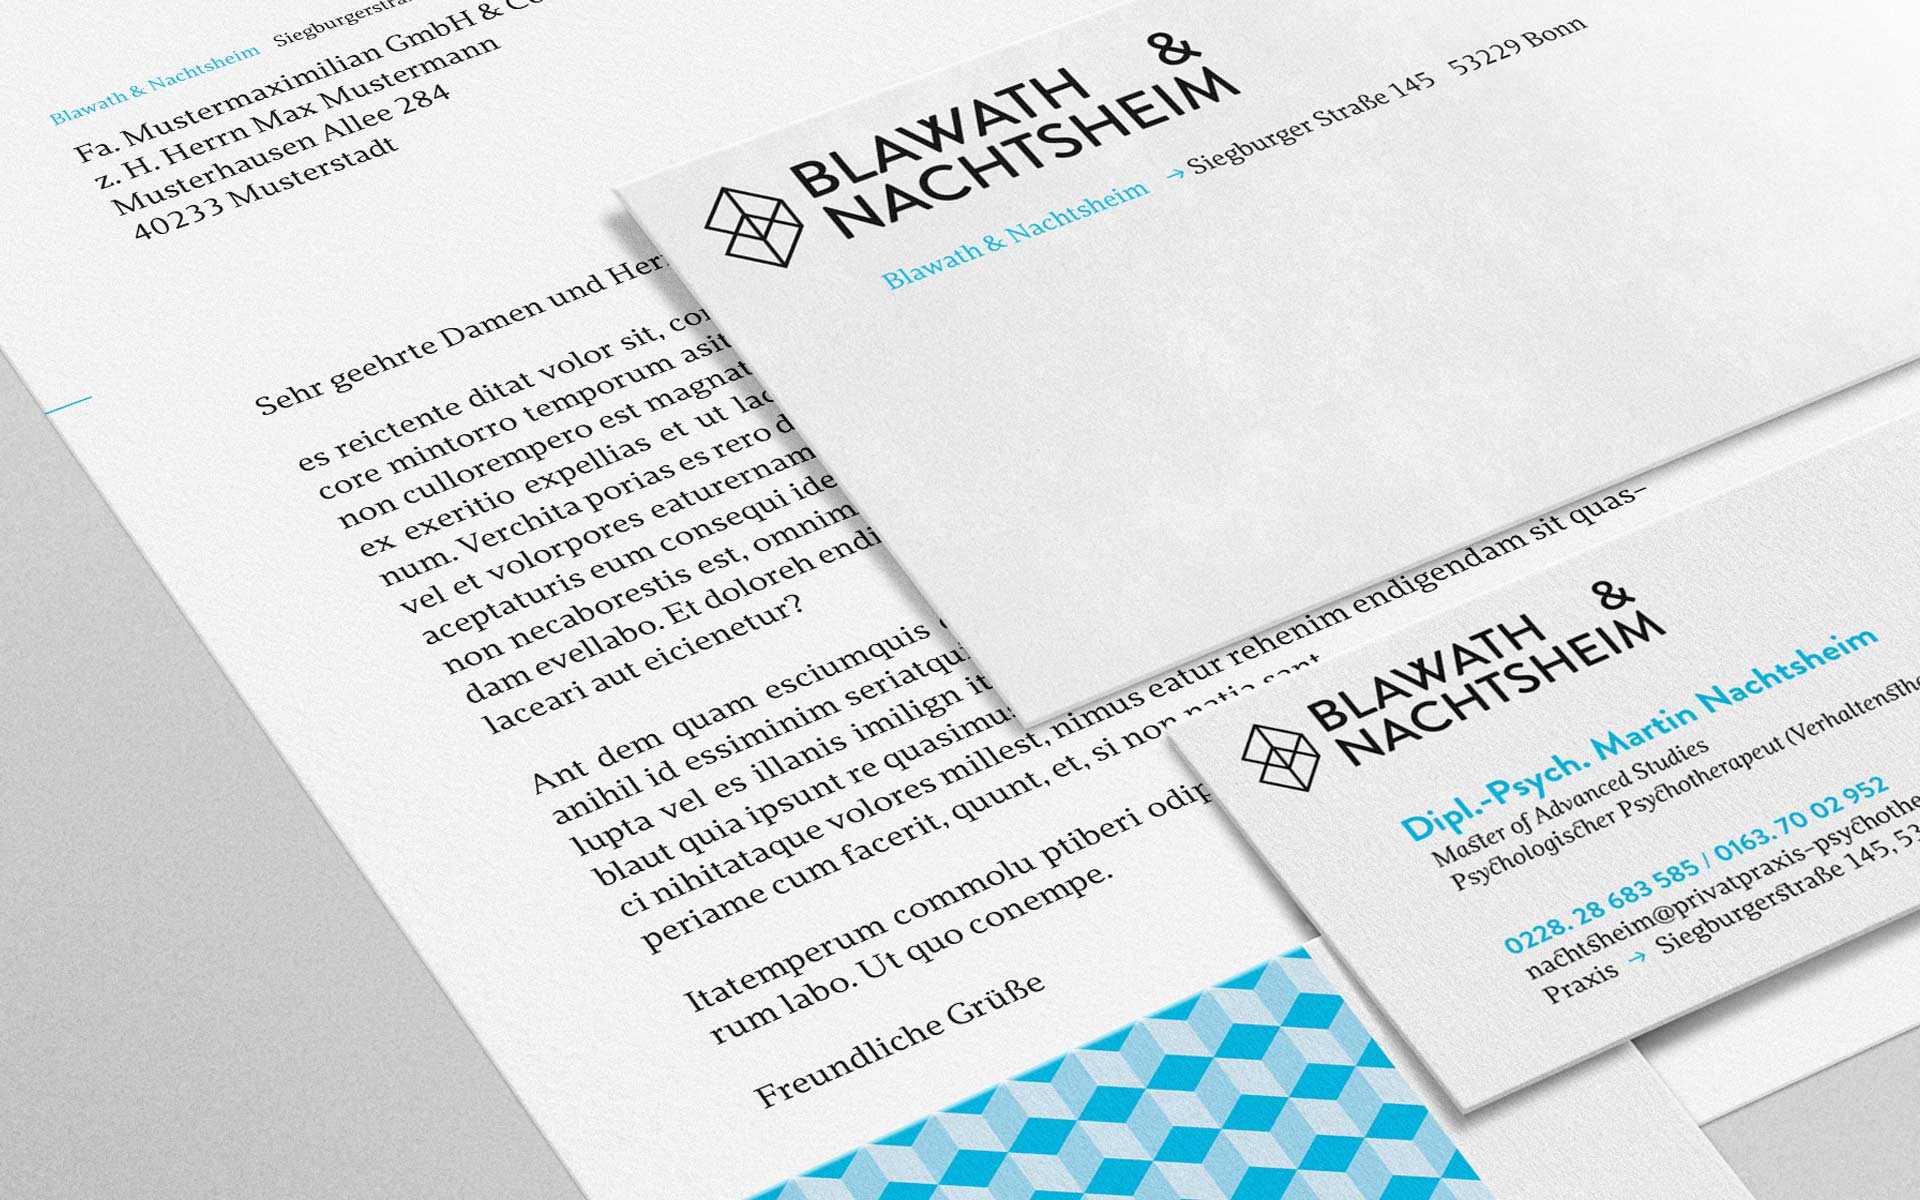 Blawath & Nachtsheim Corporate Design, Geschäftsausstattung, Details